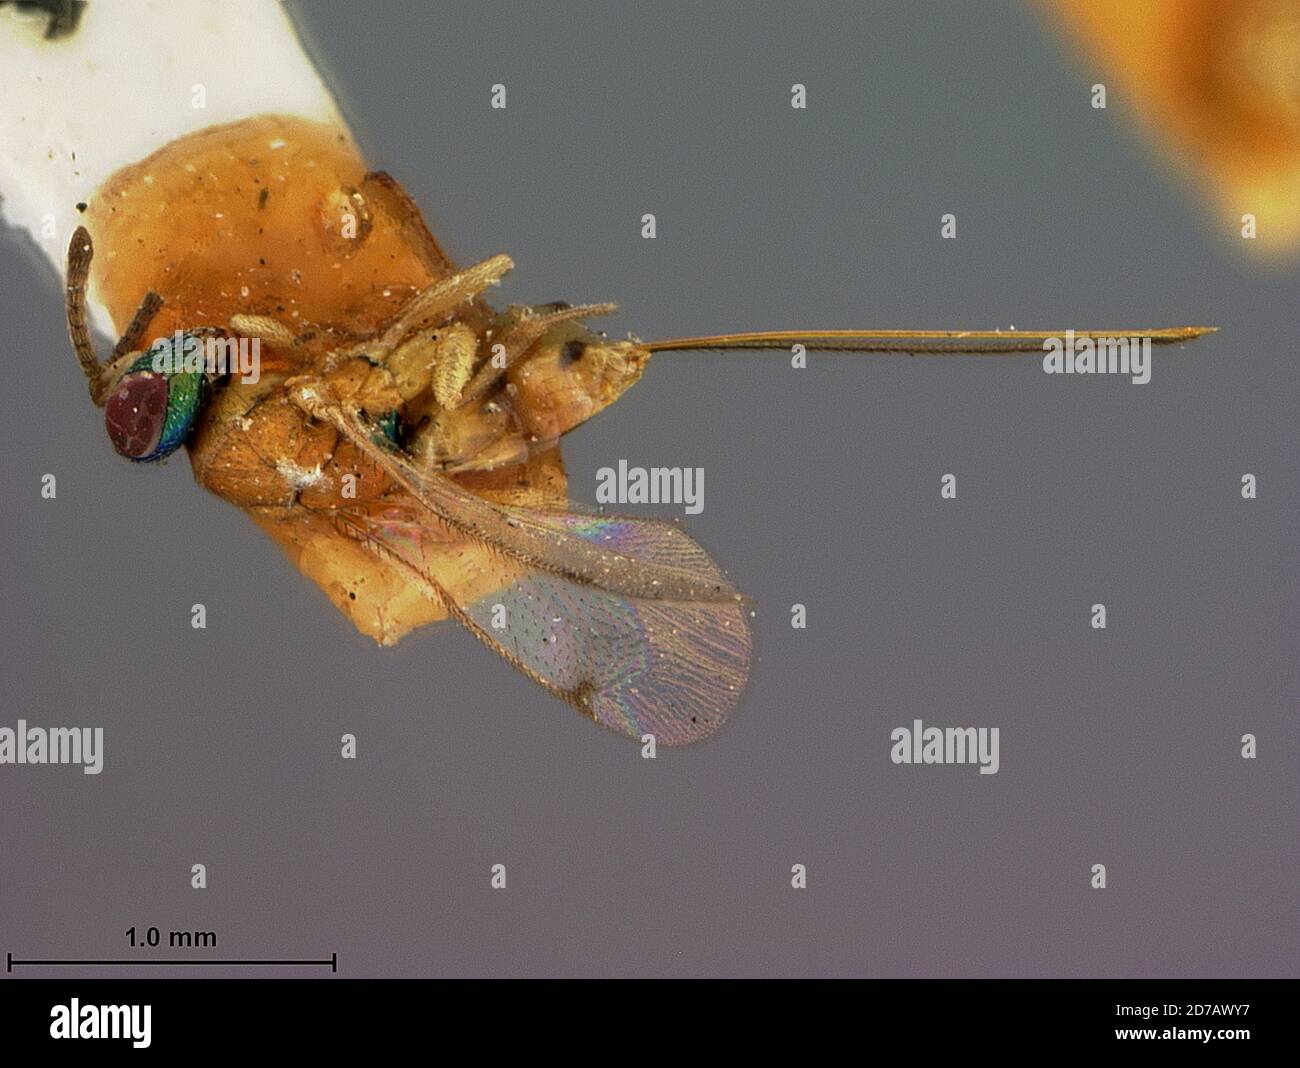 Florida, United States, Megastigma cecidomyiae Ashmead, 1887, Animalia, Arthropoda, Insecta, Hymenoptera, Torymidae Stock Photo